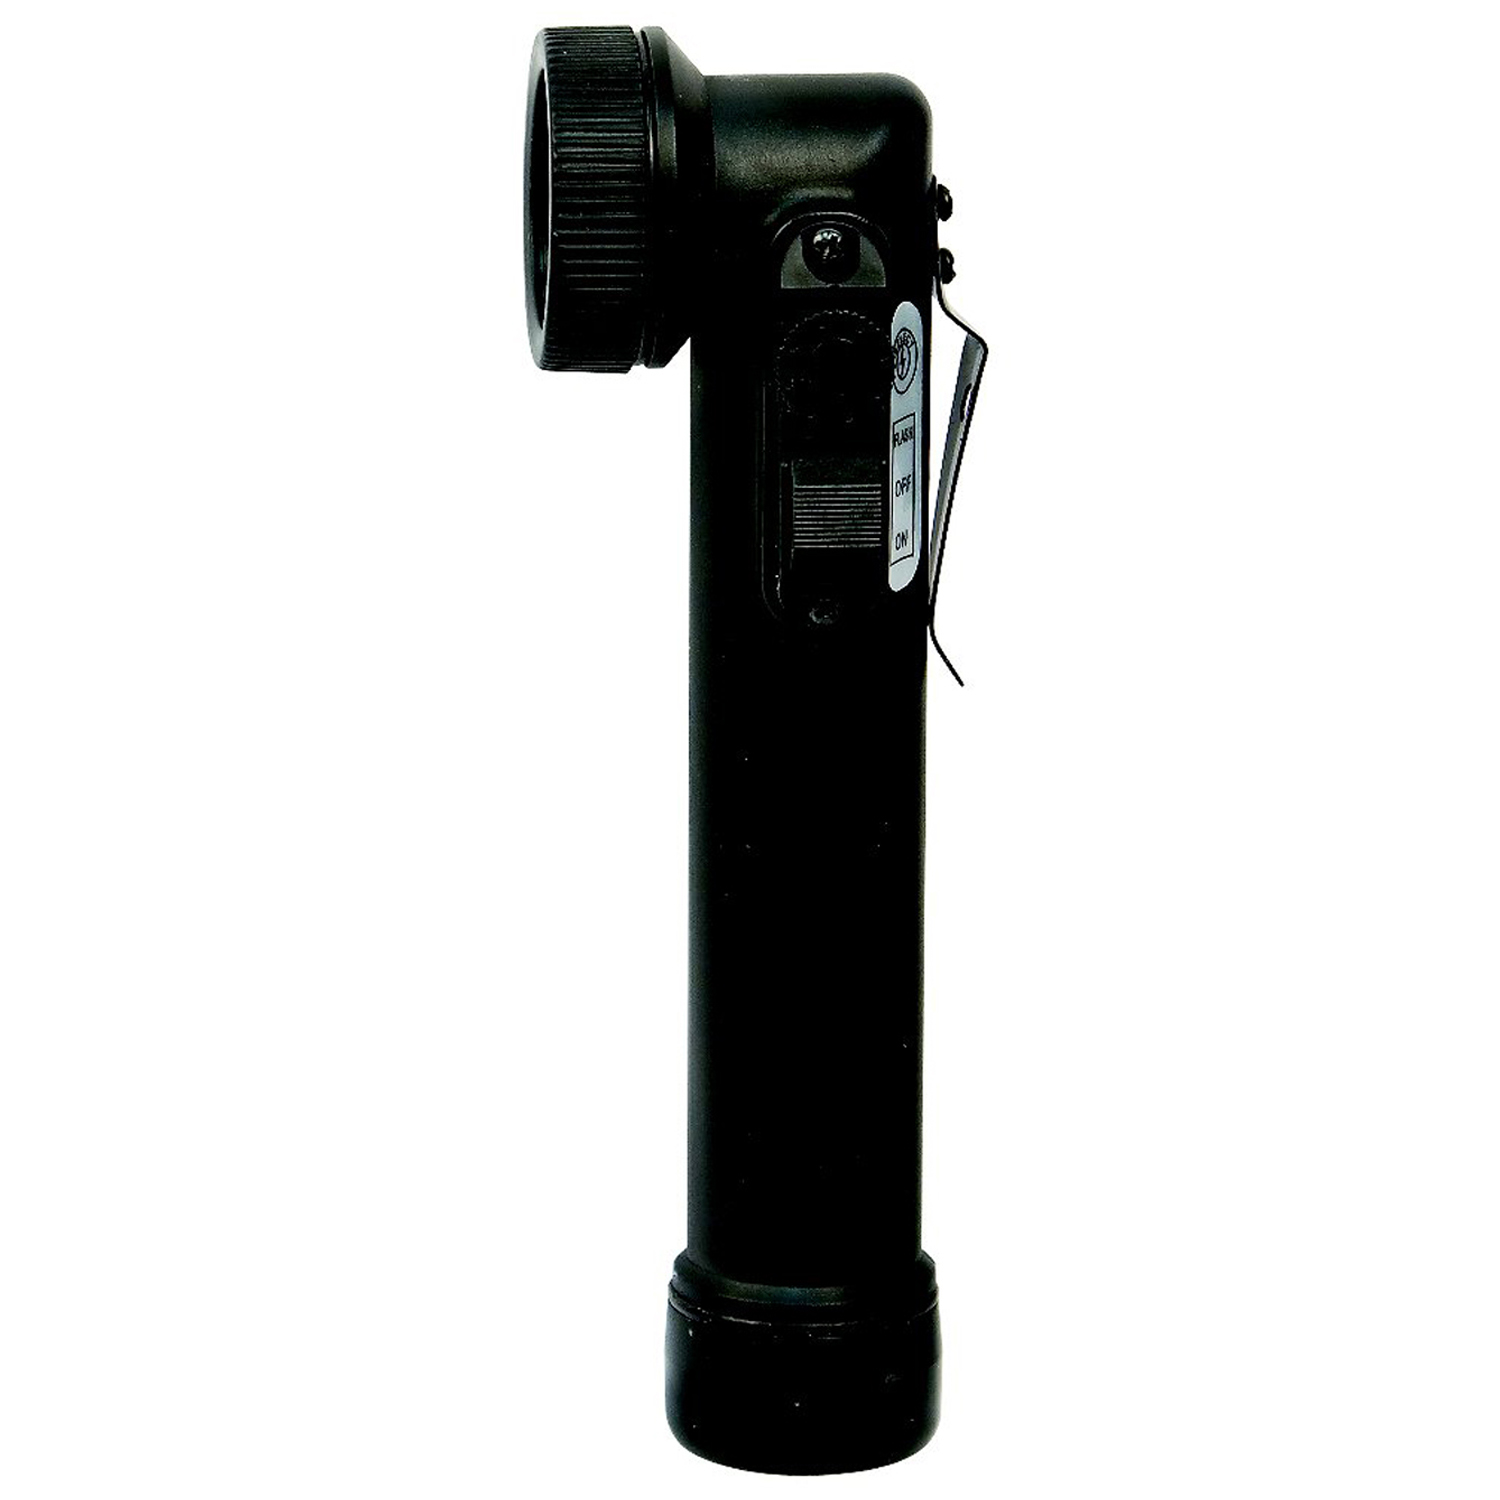 Rothco Mini LED Army Style Anglehead Flashlight